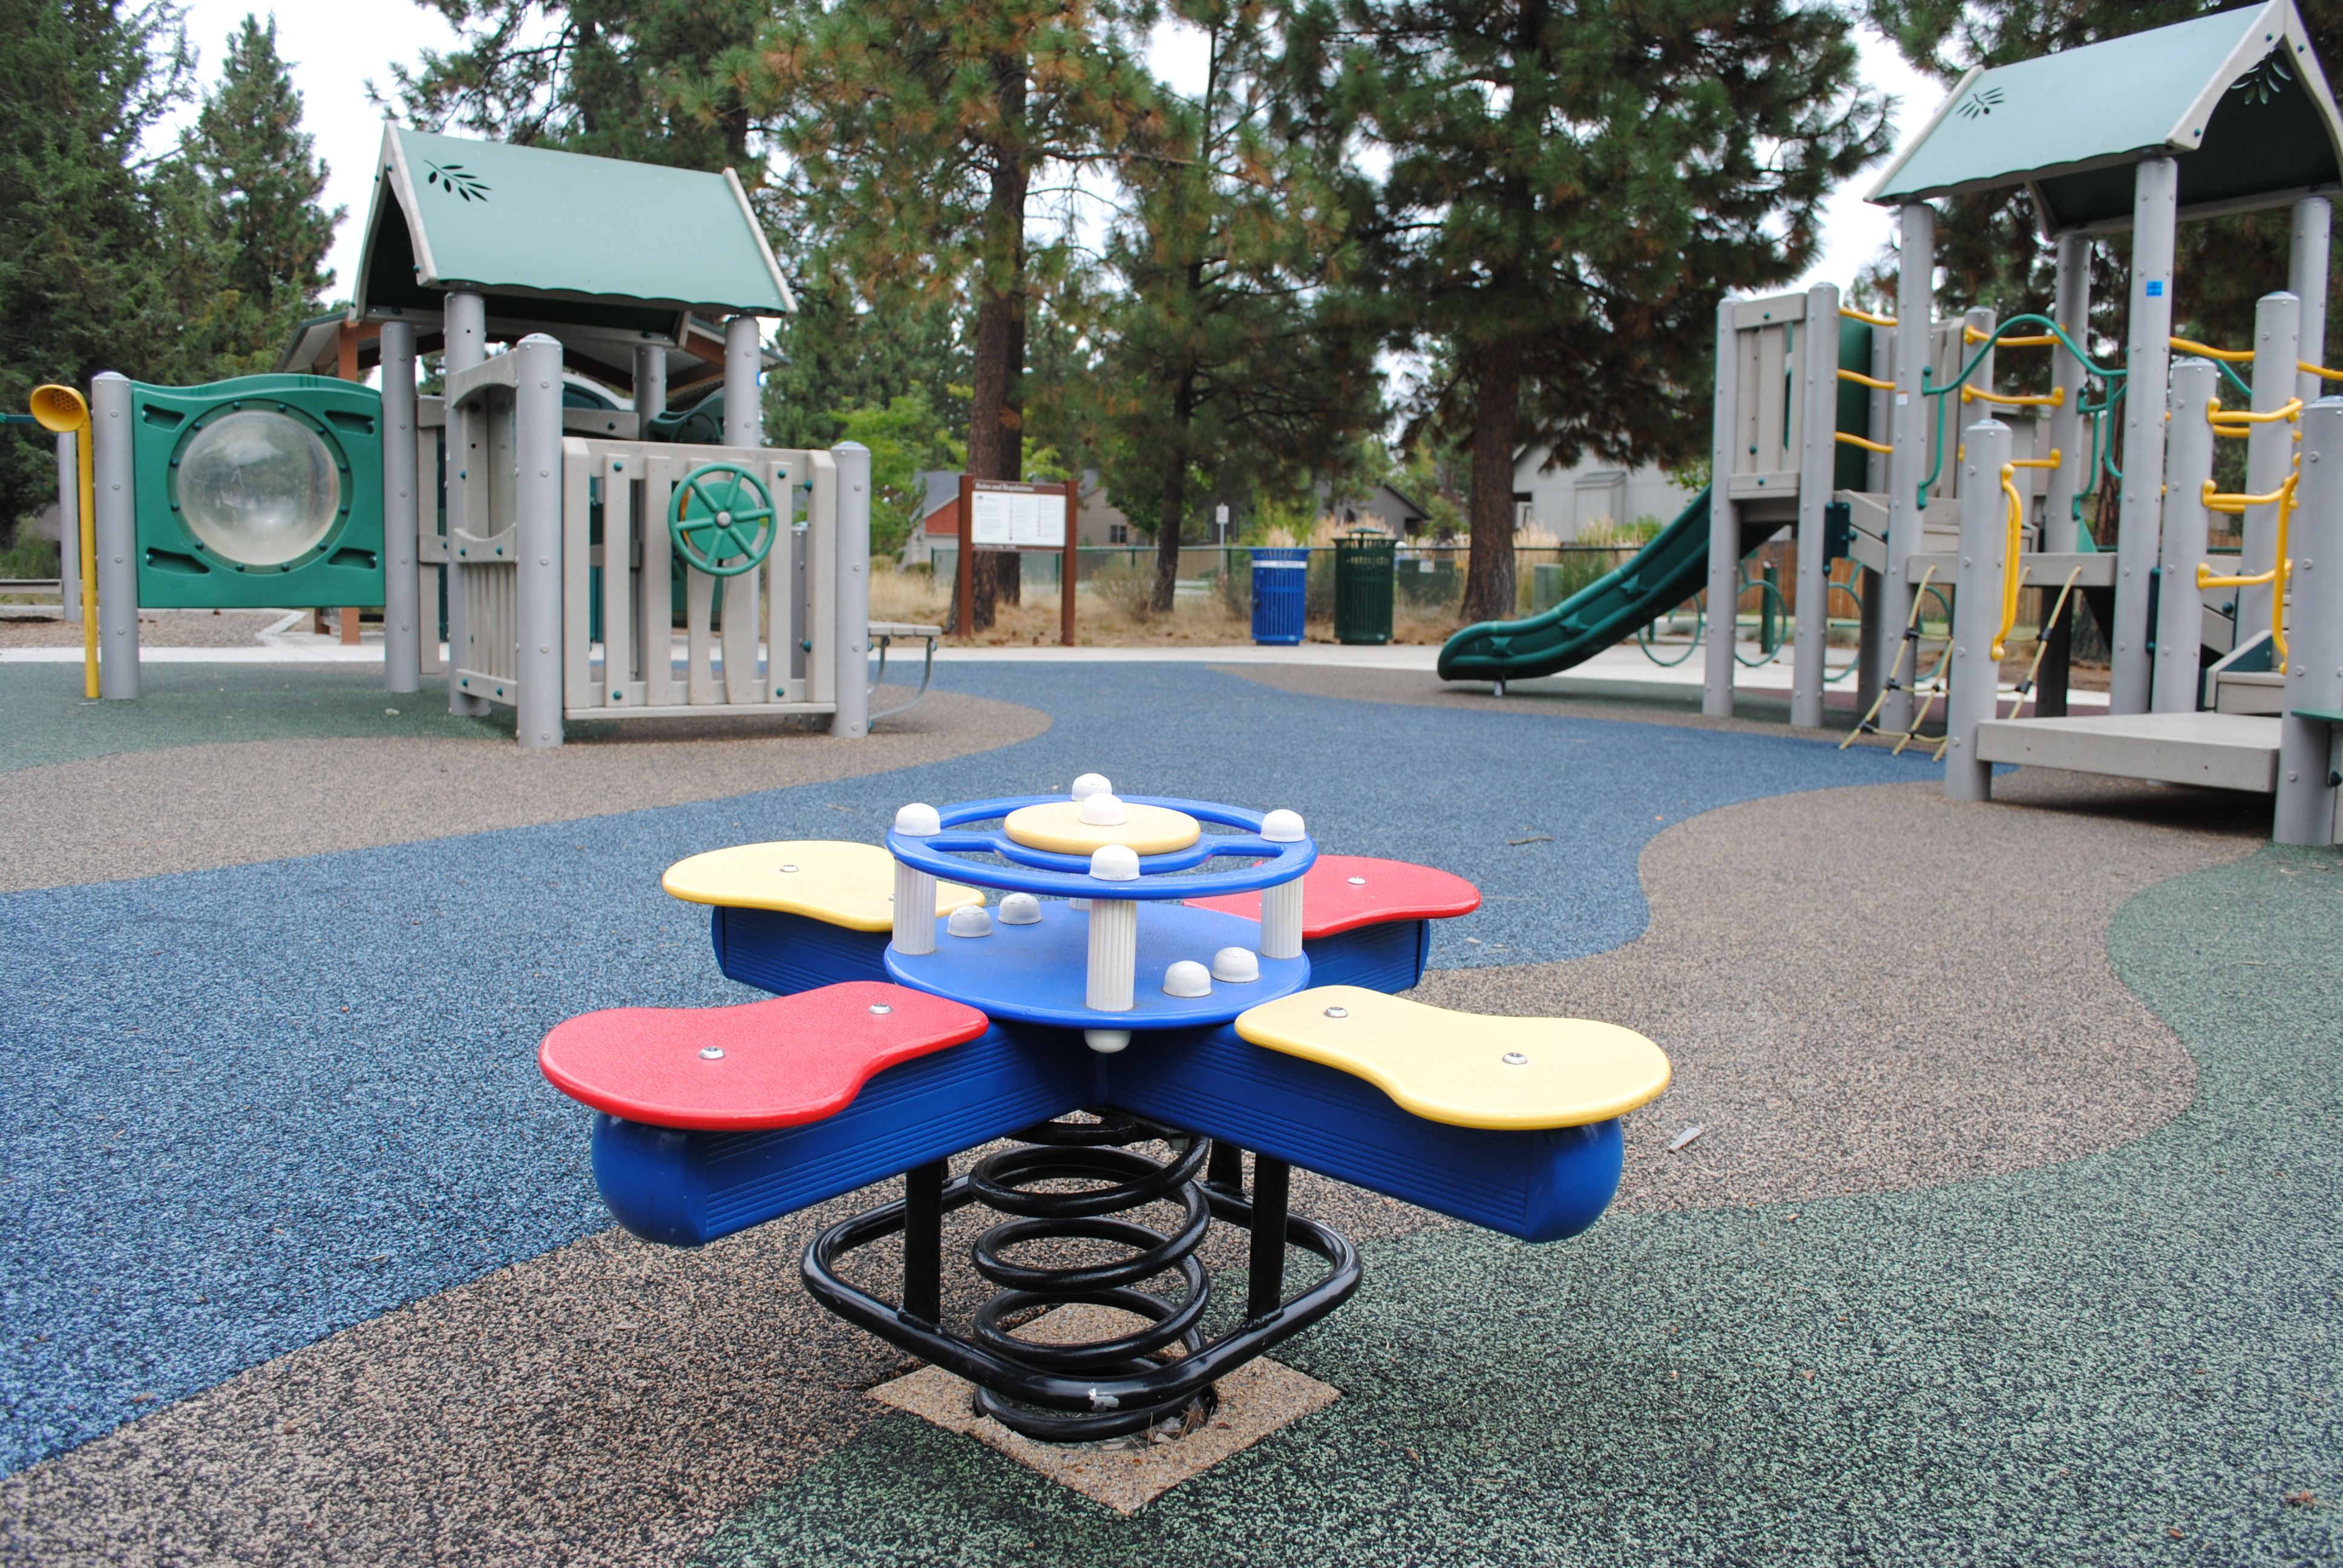 Pine ridge playground